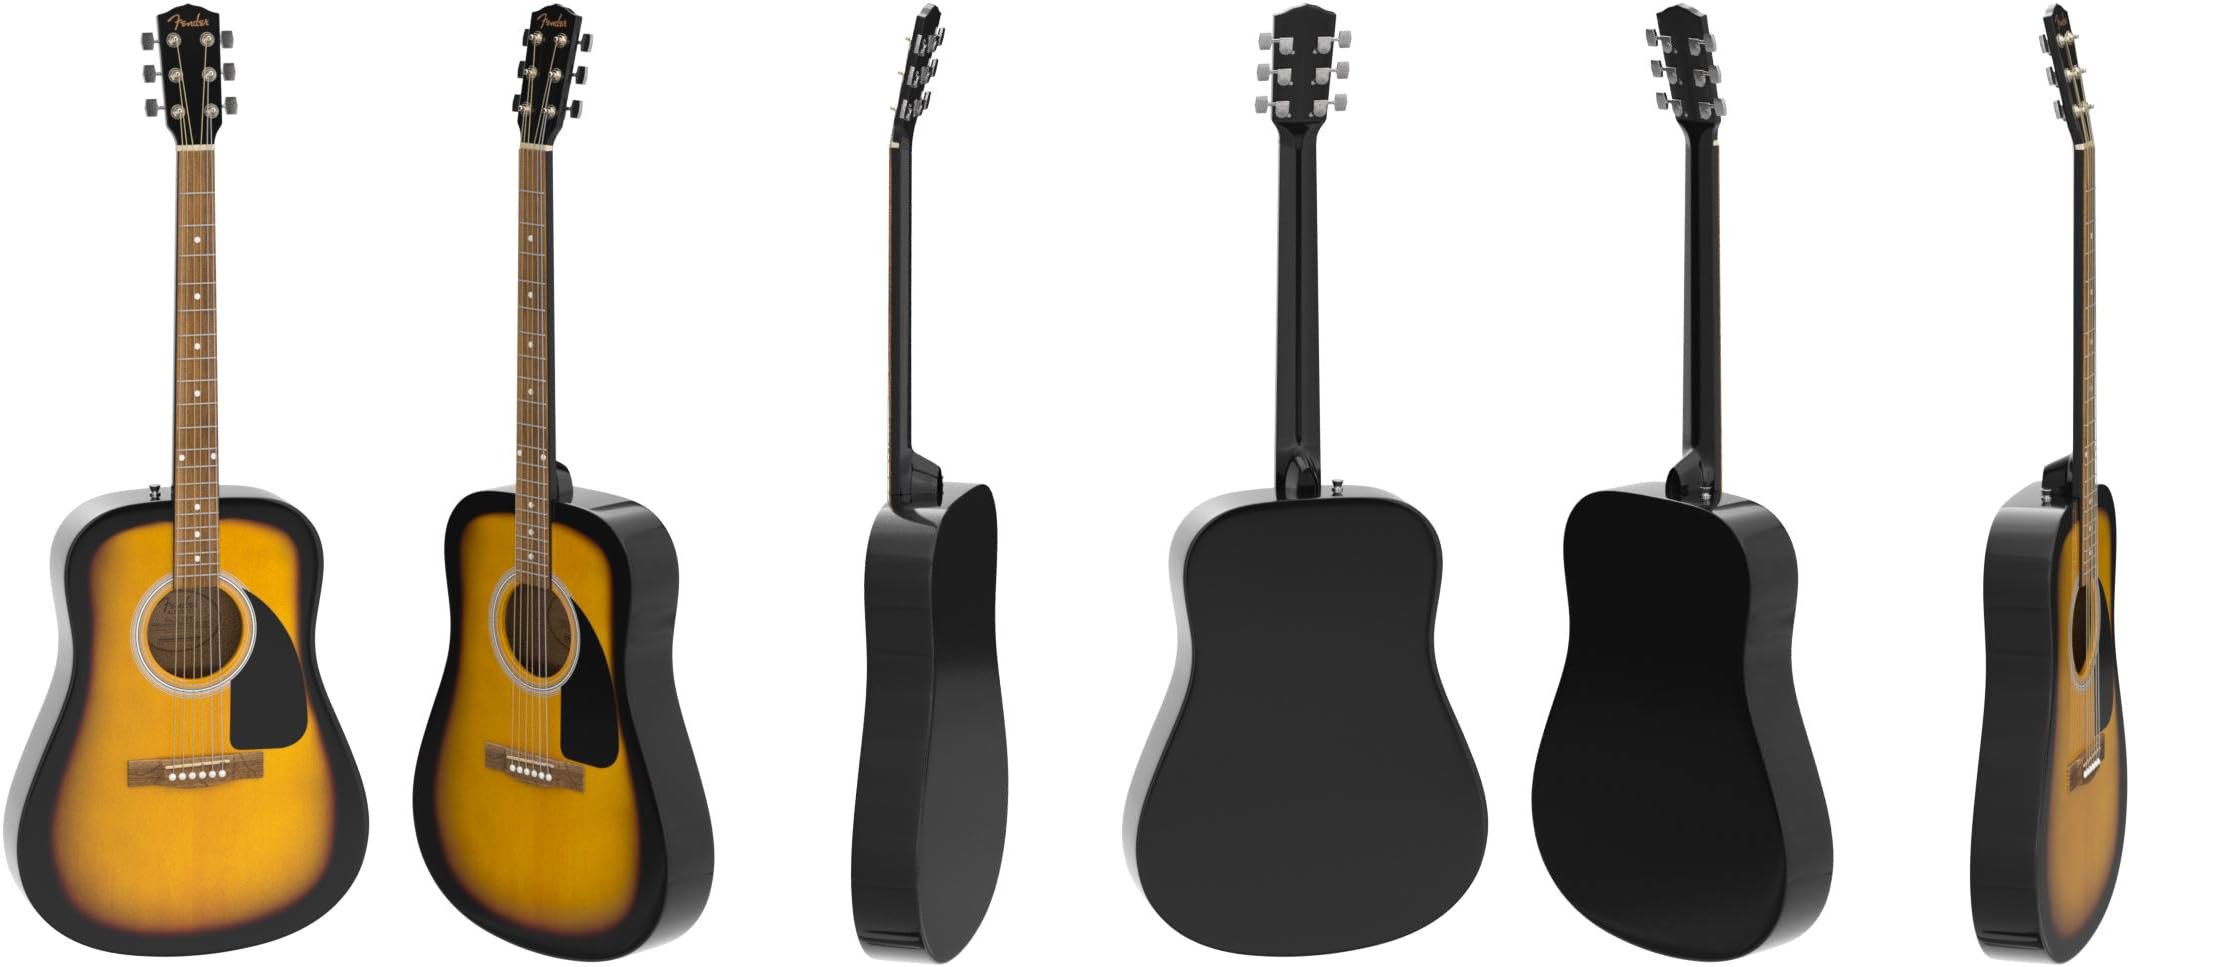 خرید گیتار آکوستیک فندر مدل اف ای 115 سان برست